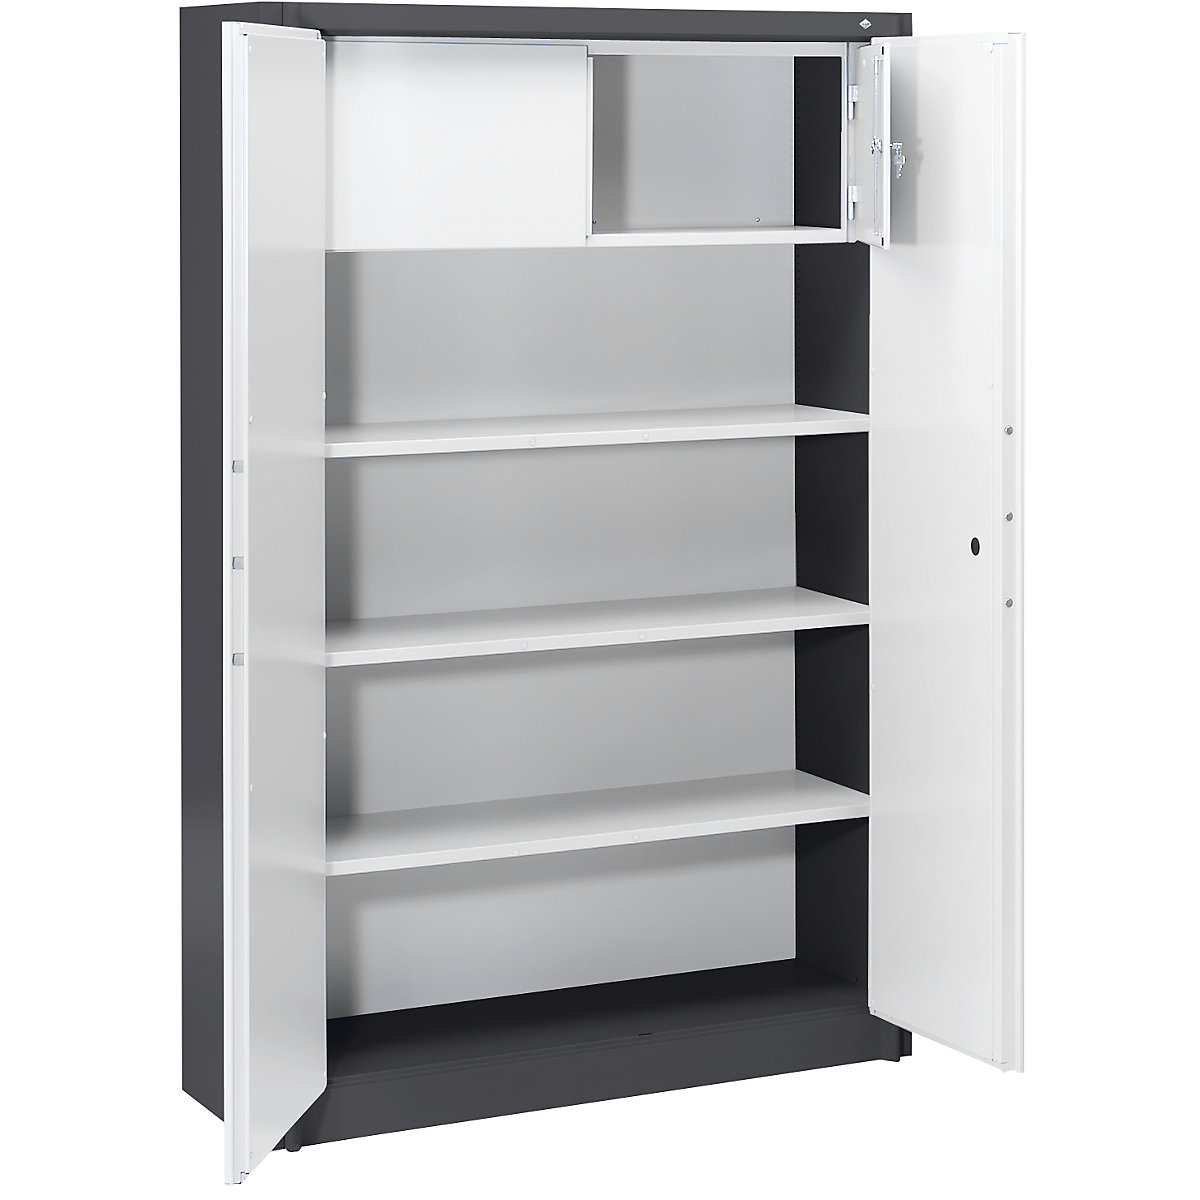 Steel cupboard, fireproof – C+P, DIN 4102 compliant, HxWxD 1950 x 1200 x 500 mm, black grey/light grey, with locker-12